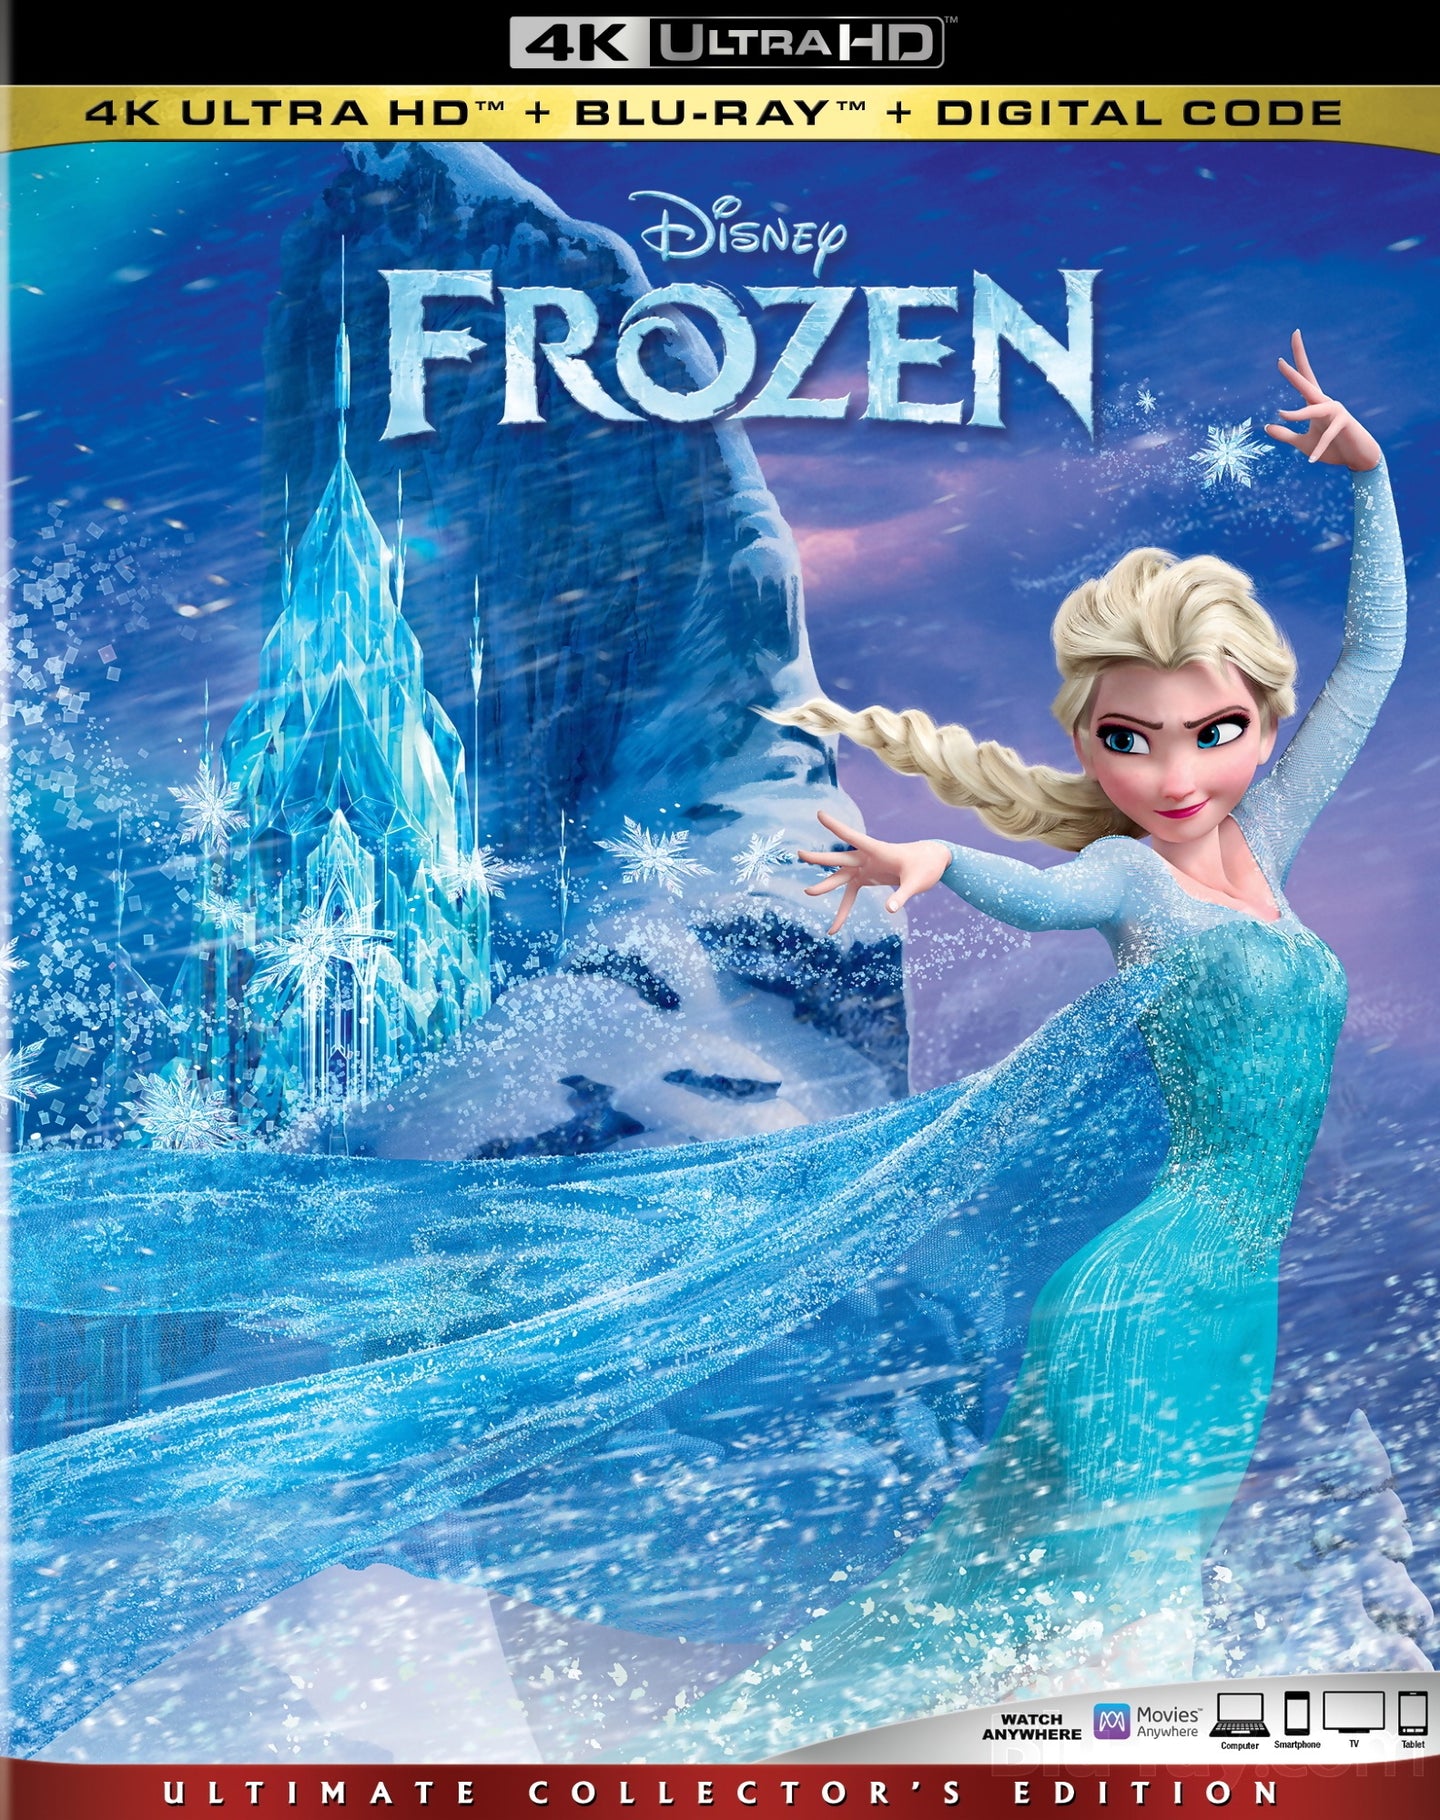 Frozen (2013: Ports Via MA) iTunes 4K code